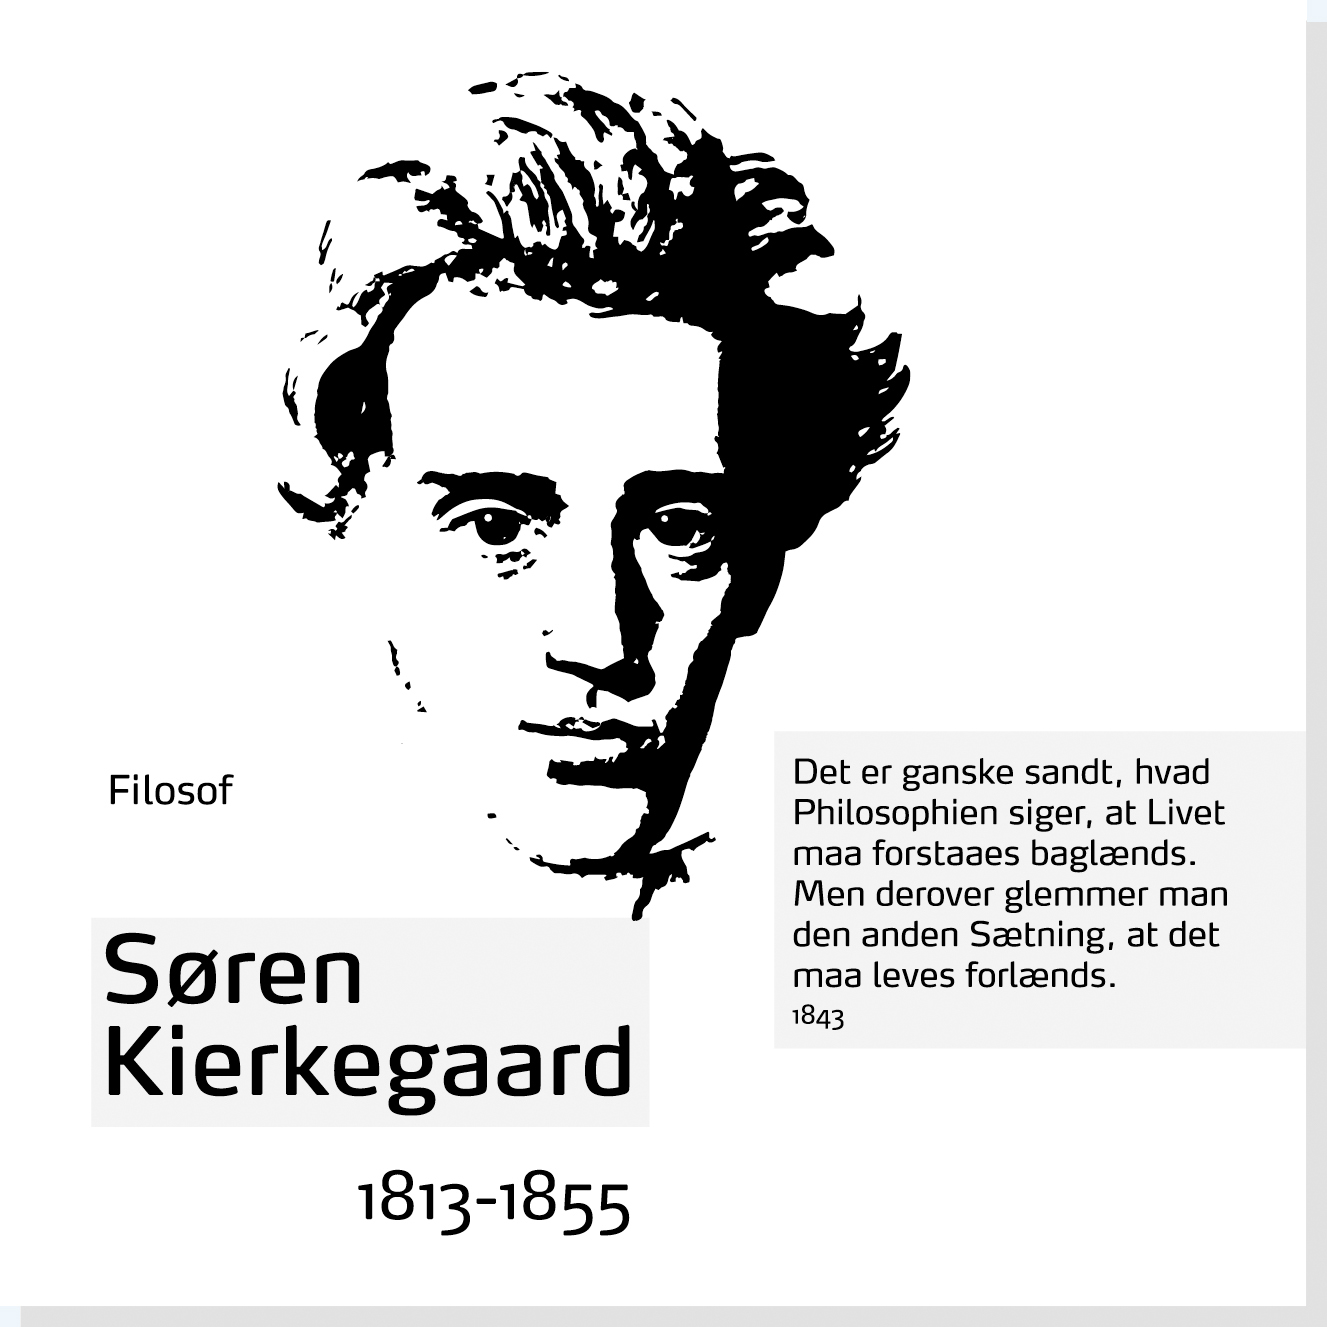 Søren Kierkegaard er en af Rysensteens 22 udvalgte danske dannelsespersoner